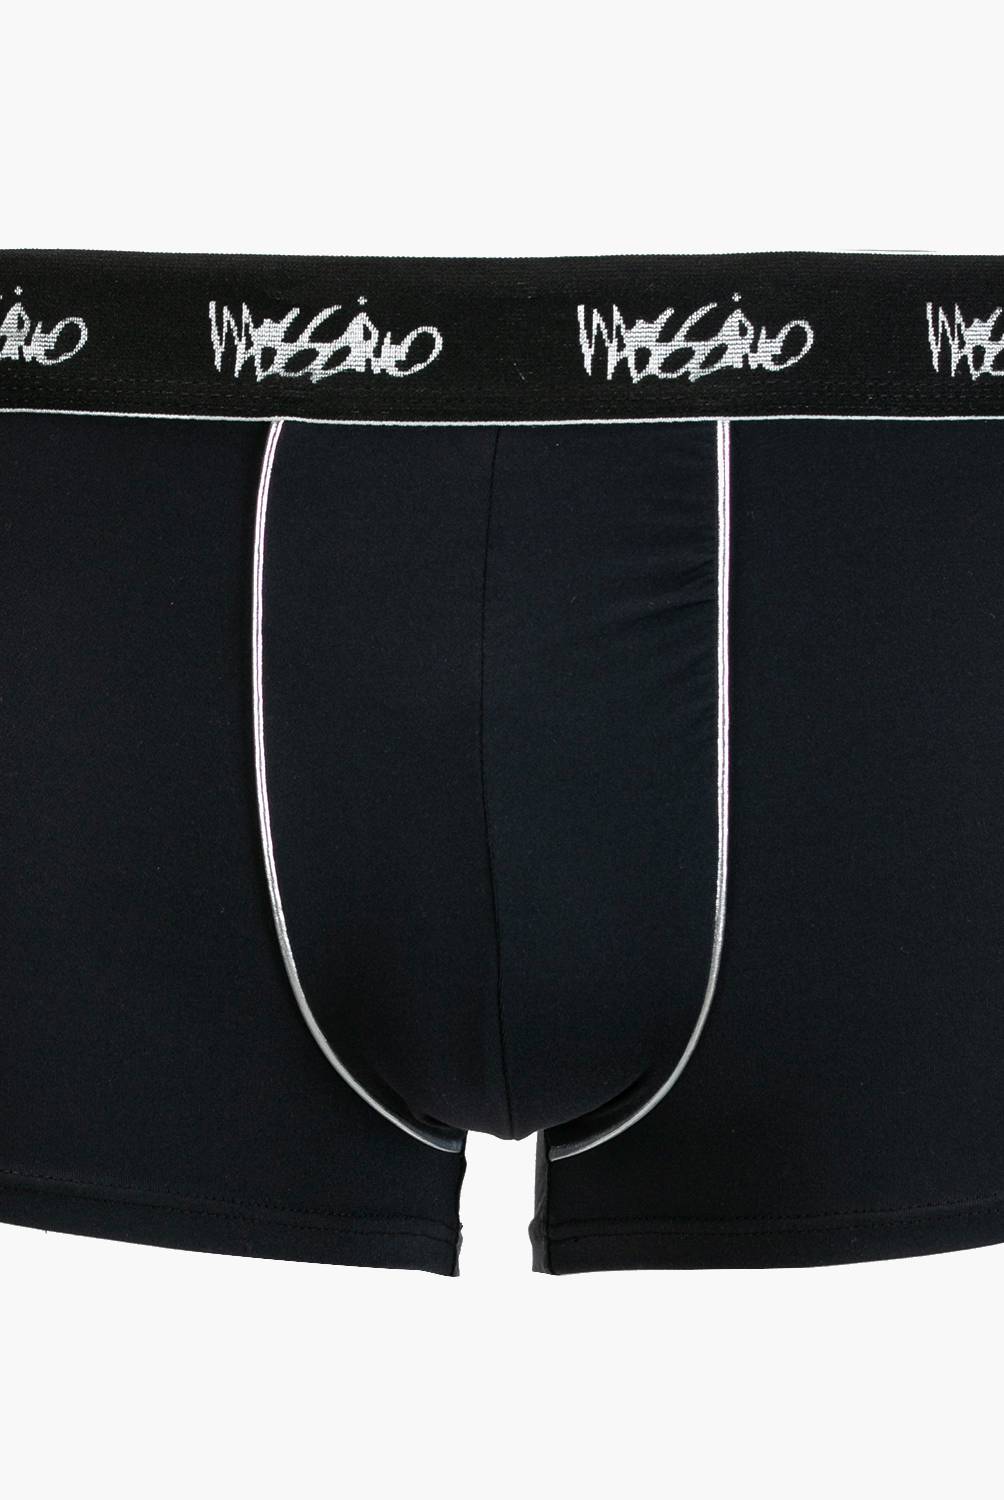 MOSSIMO - Mossimo Pack de 4 boxer algodón hombre